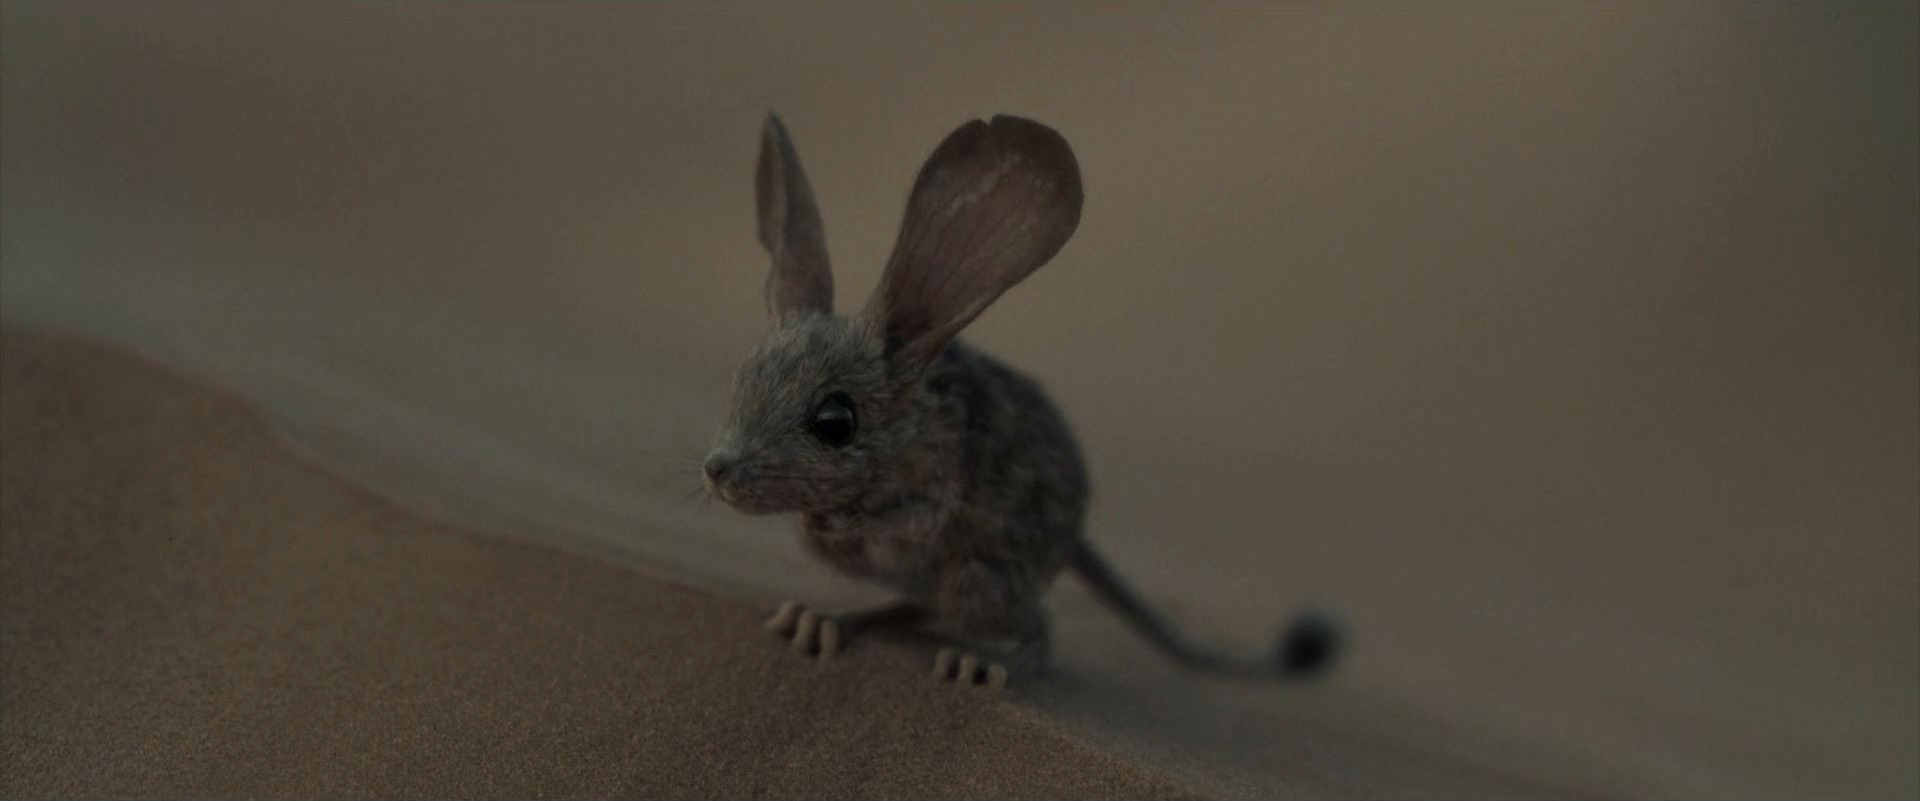 موش مودب در فیلم تلماسه